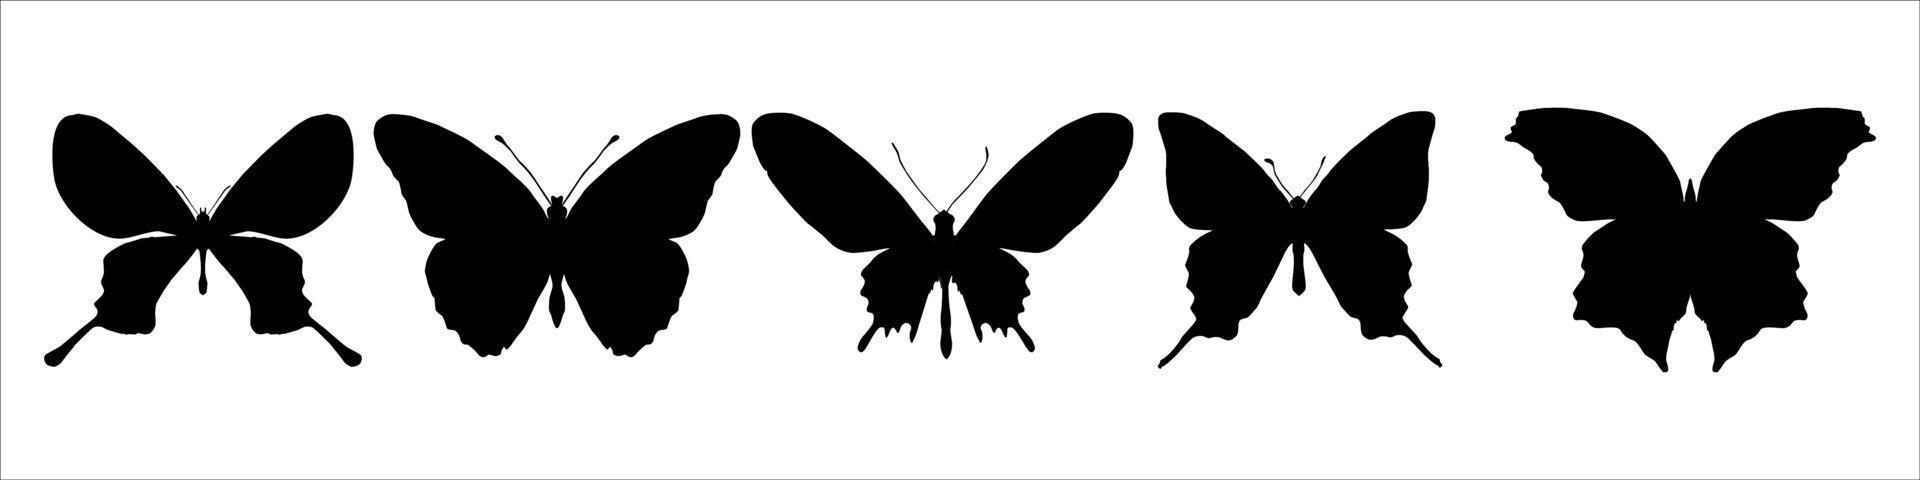 vector collectie van vlinder silhouetten